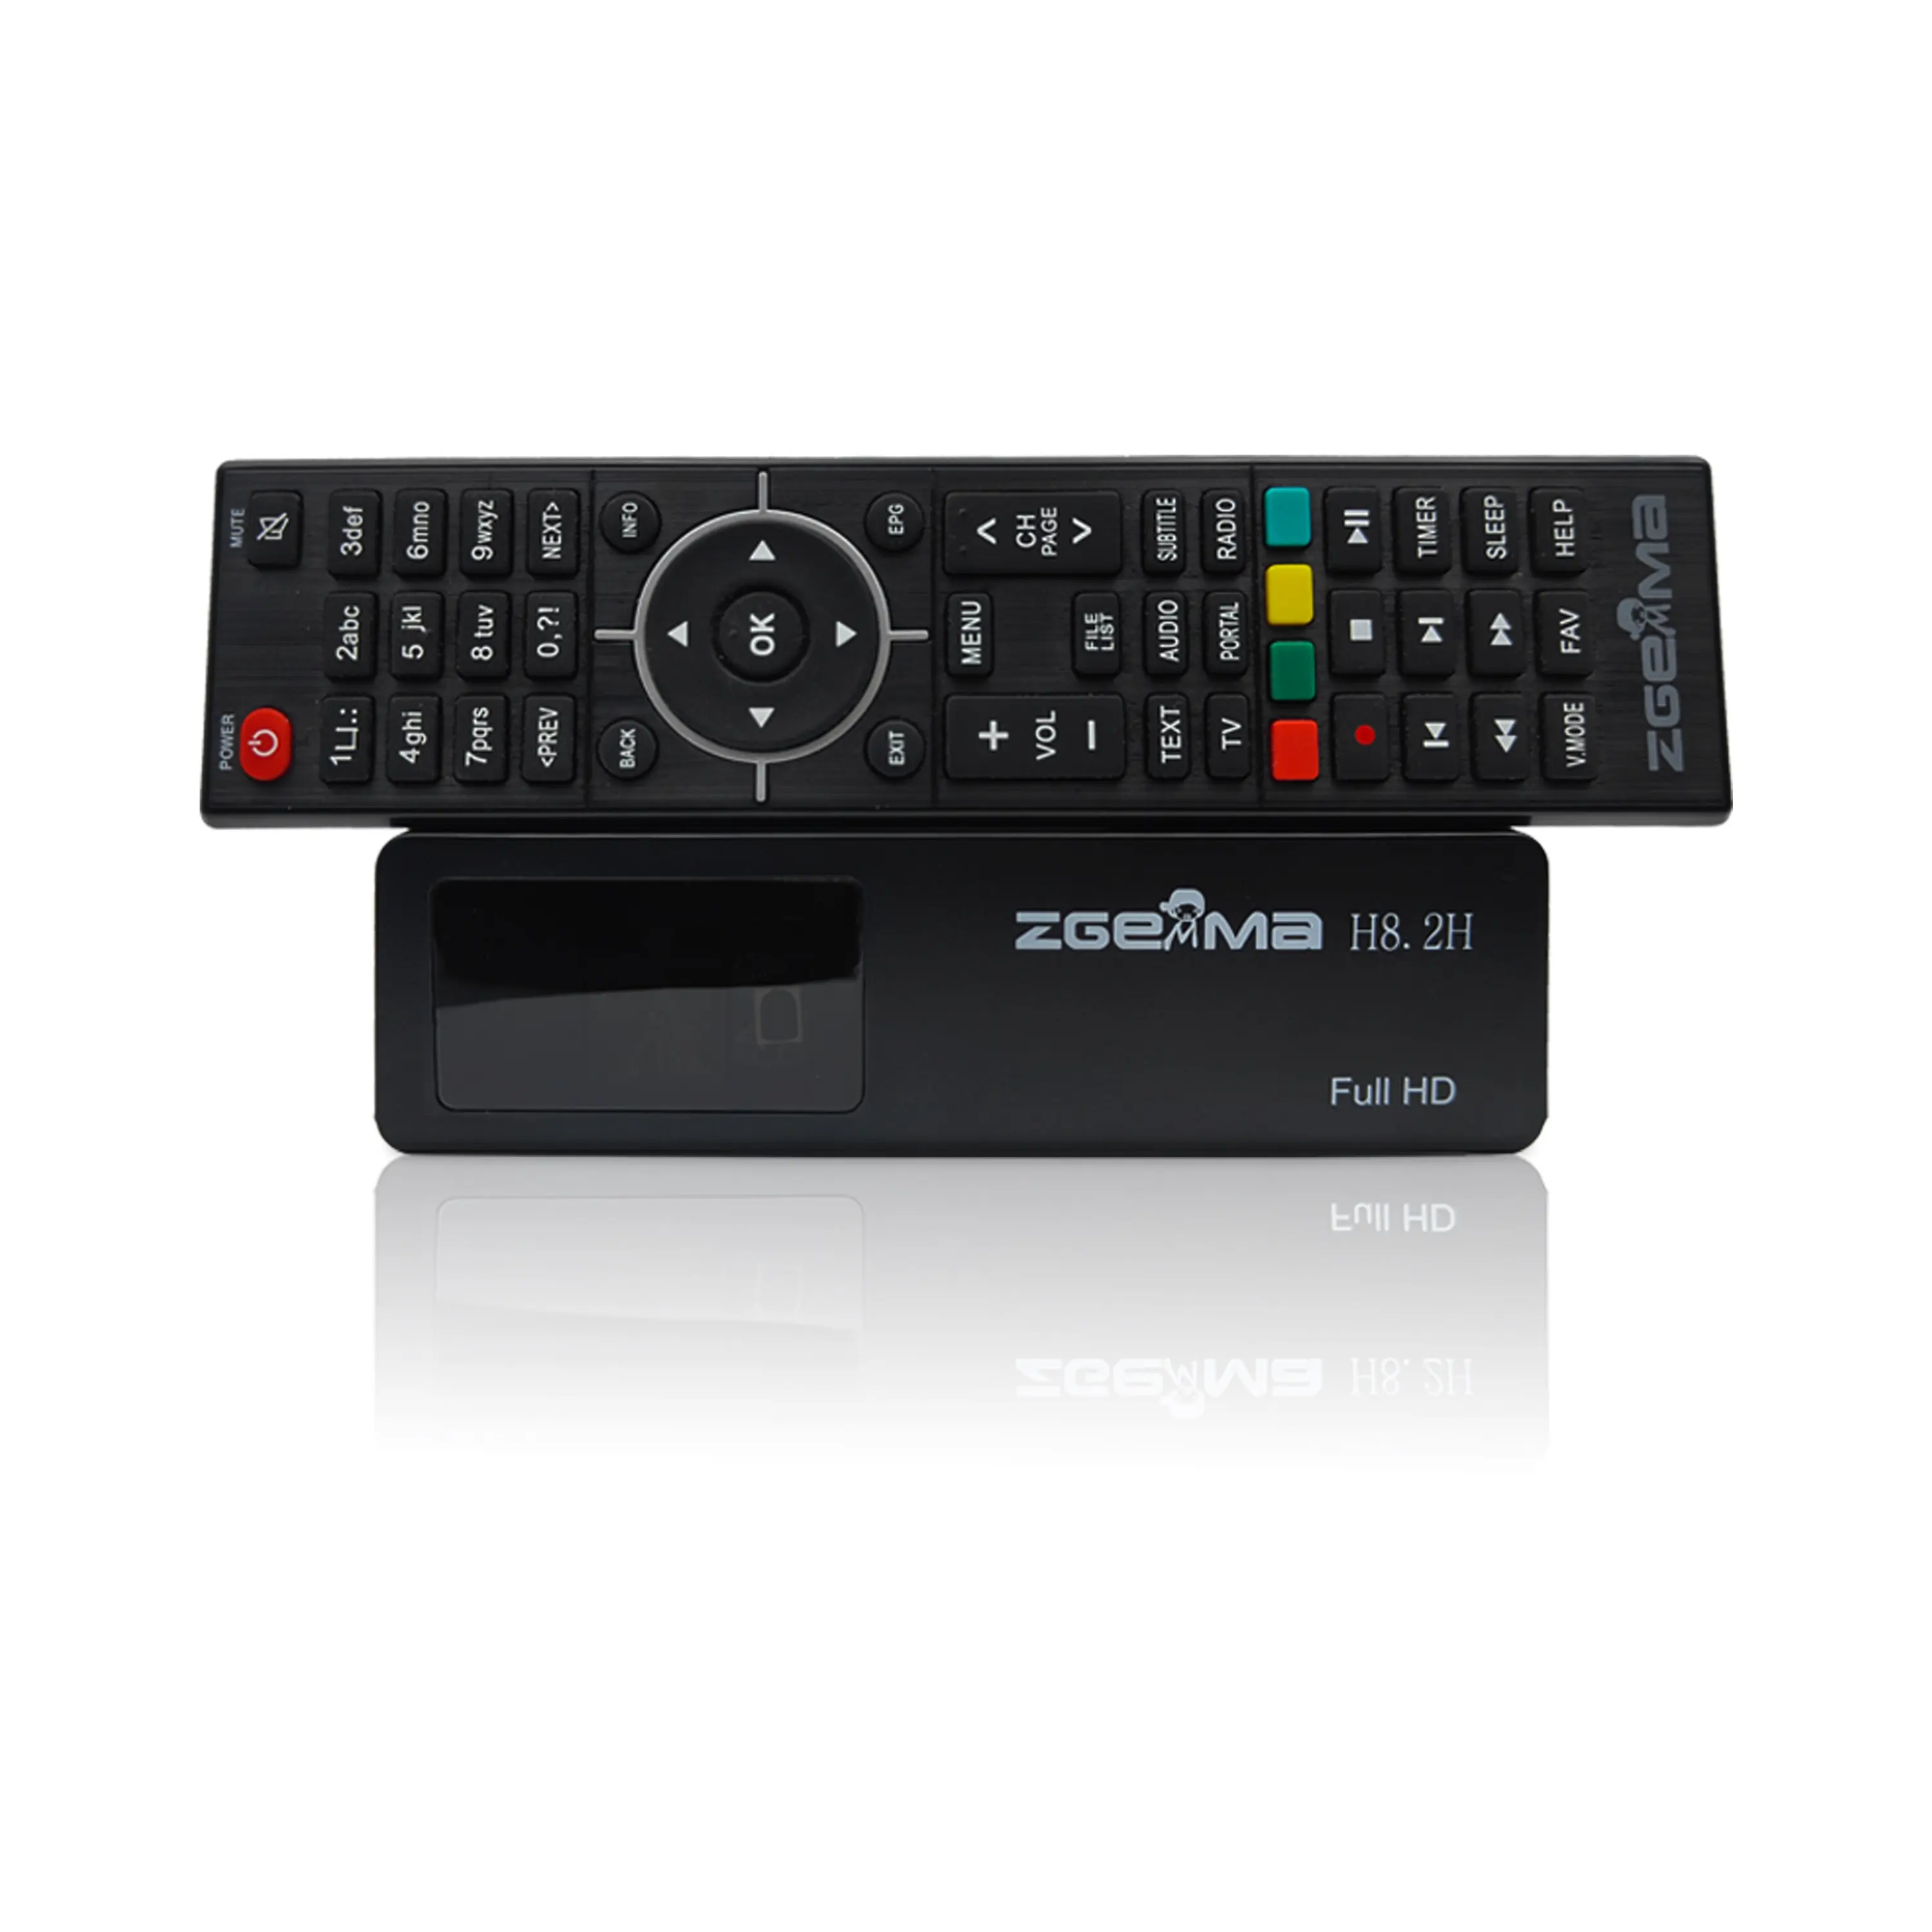 Récepteur de télévision par satellite H.265 1080p Enigm2 Linux OS DVB S2X + DVB T2/C combo tuner boîtier iptv et décodeur tv ZGEMMA H8.2H